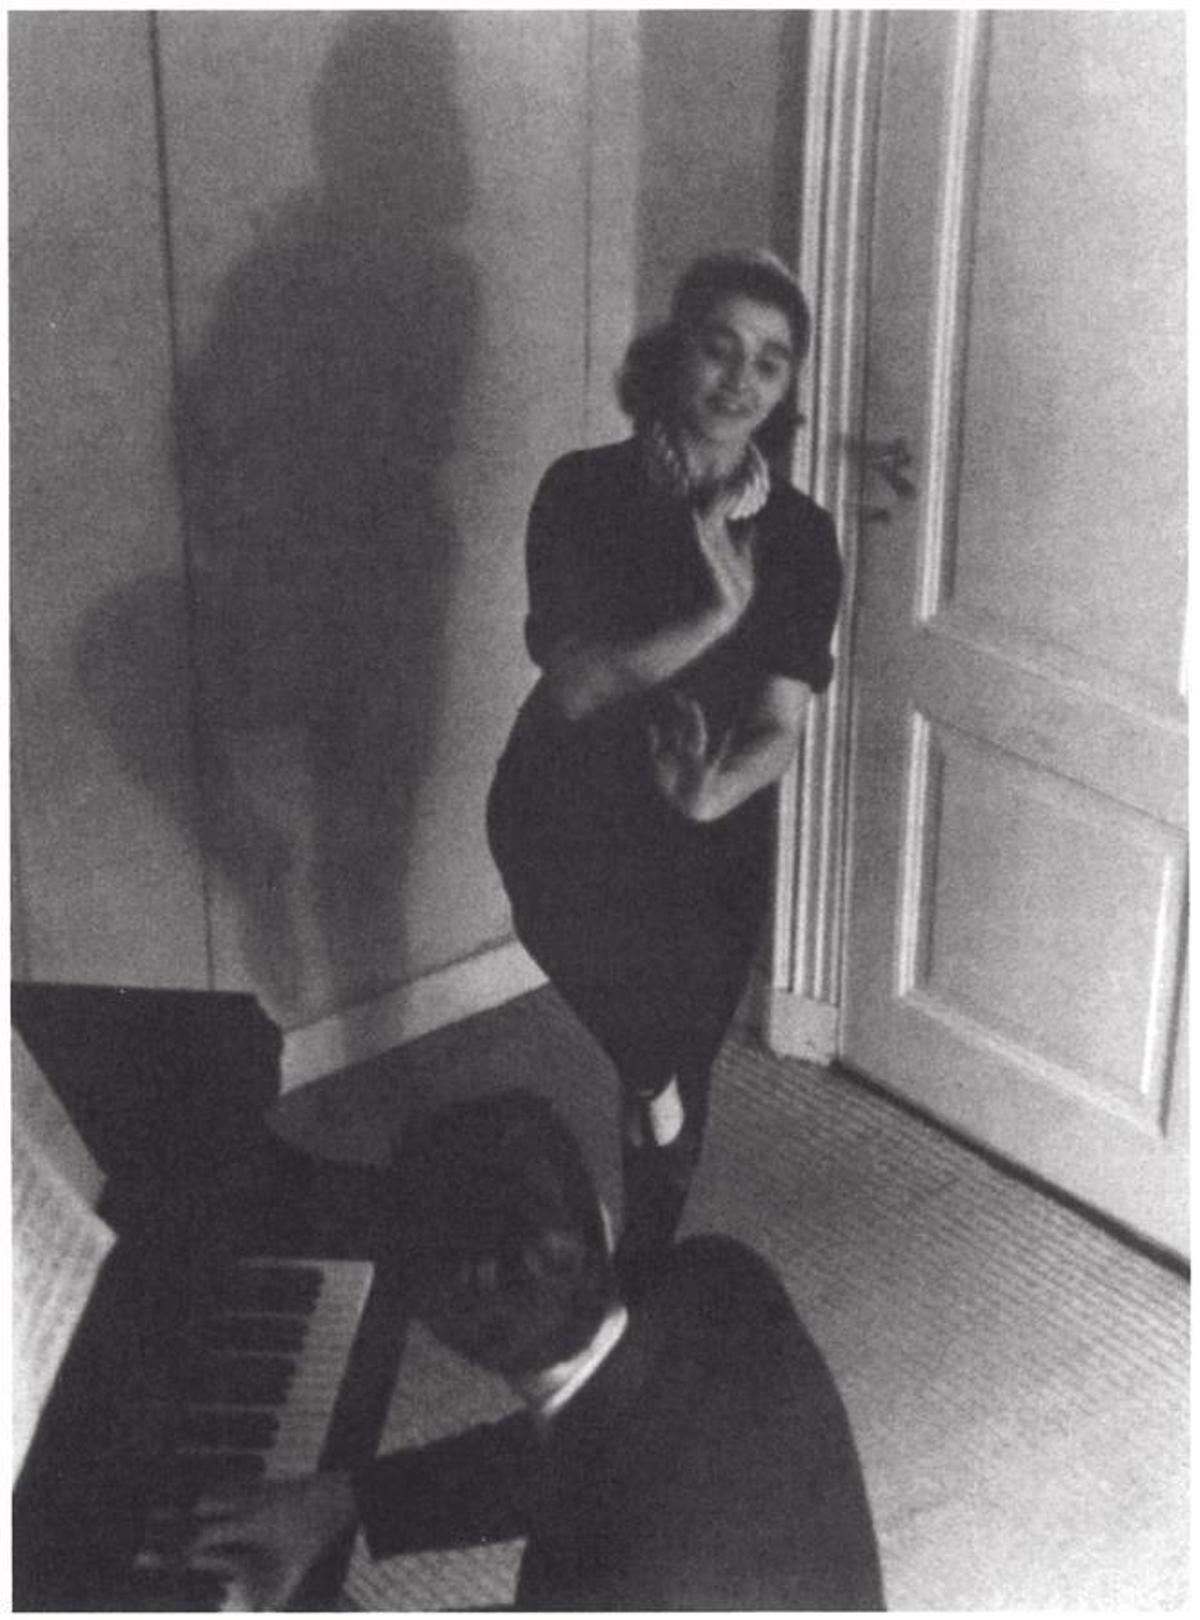 Lien, bailarina, con su esposo Eberhard, pianista, en el estudio de danza, 1939.